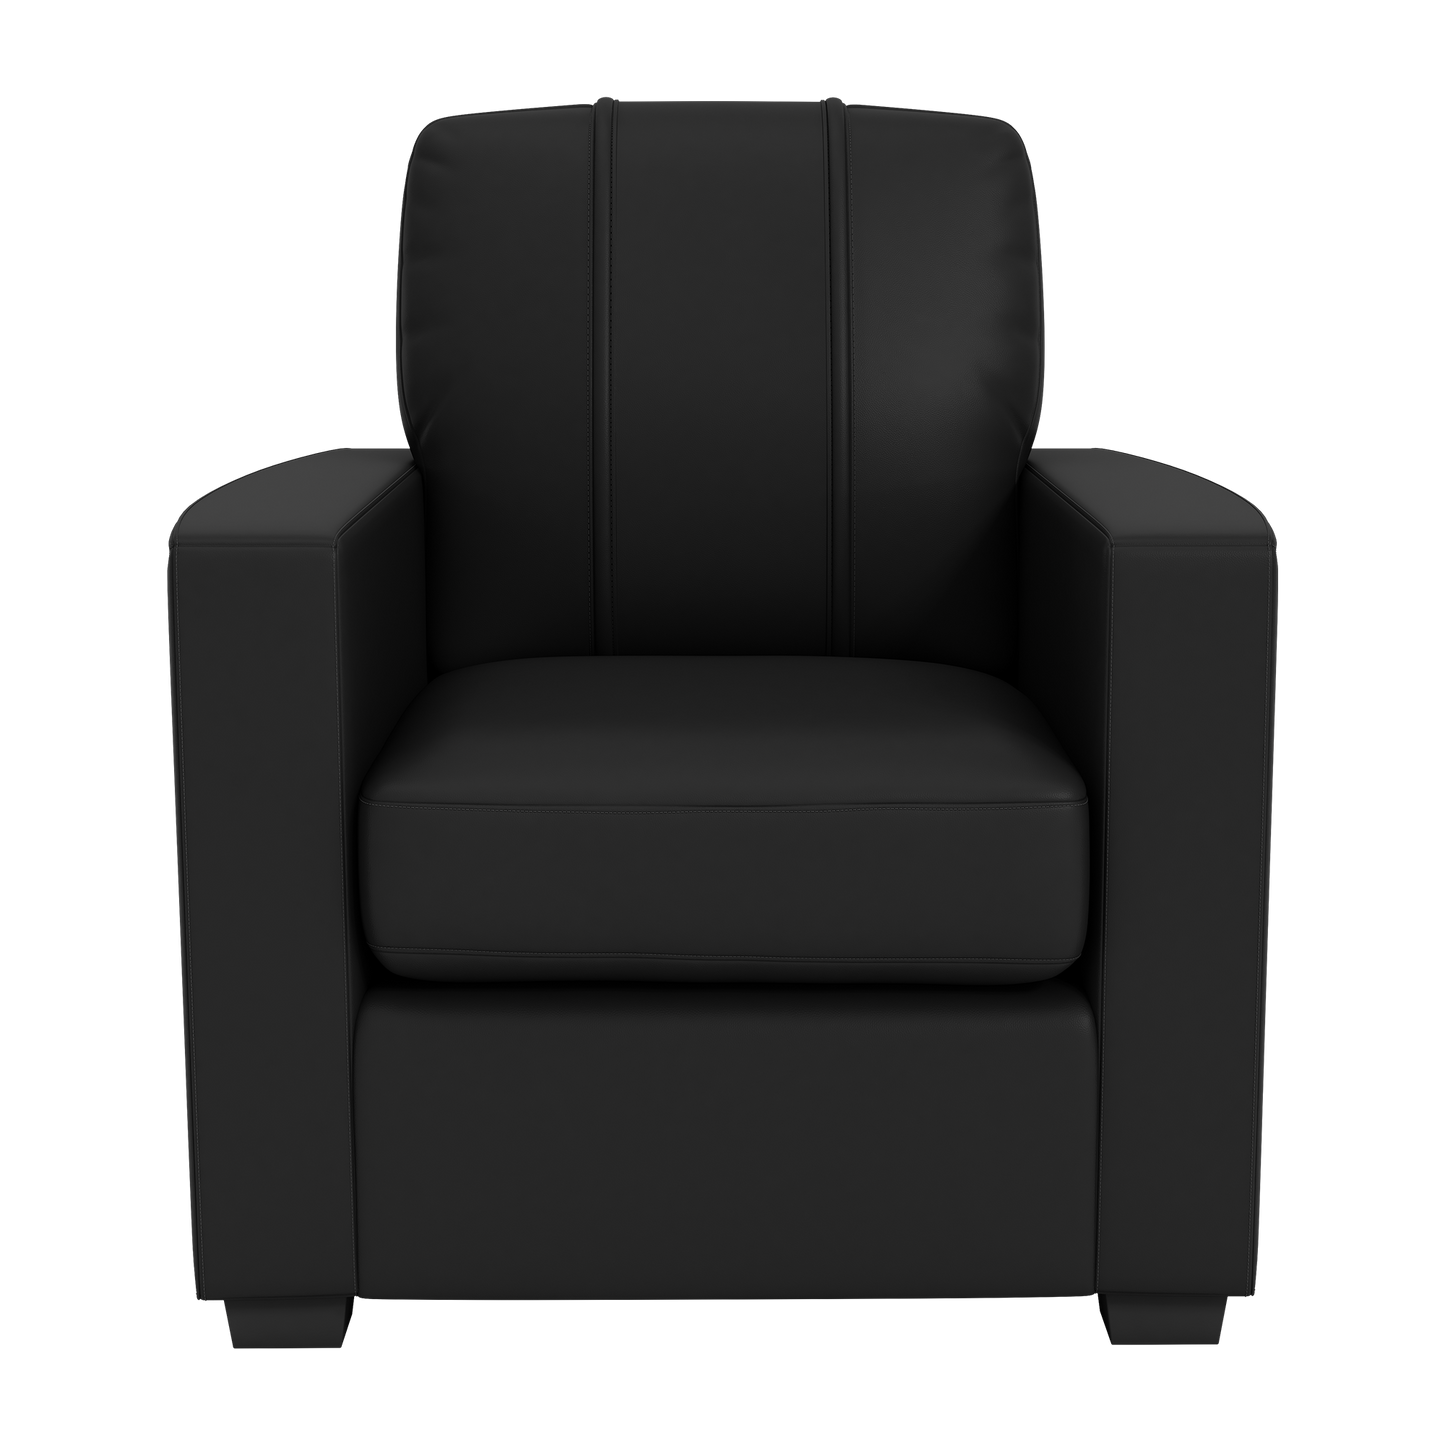 Silver Club Chair with Atlanta Hawks Logo